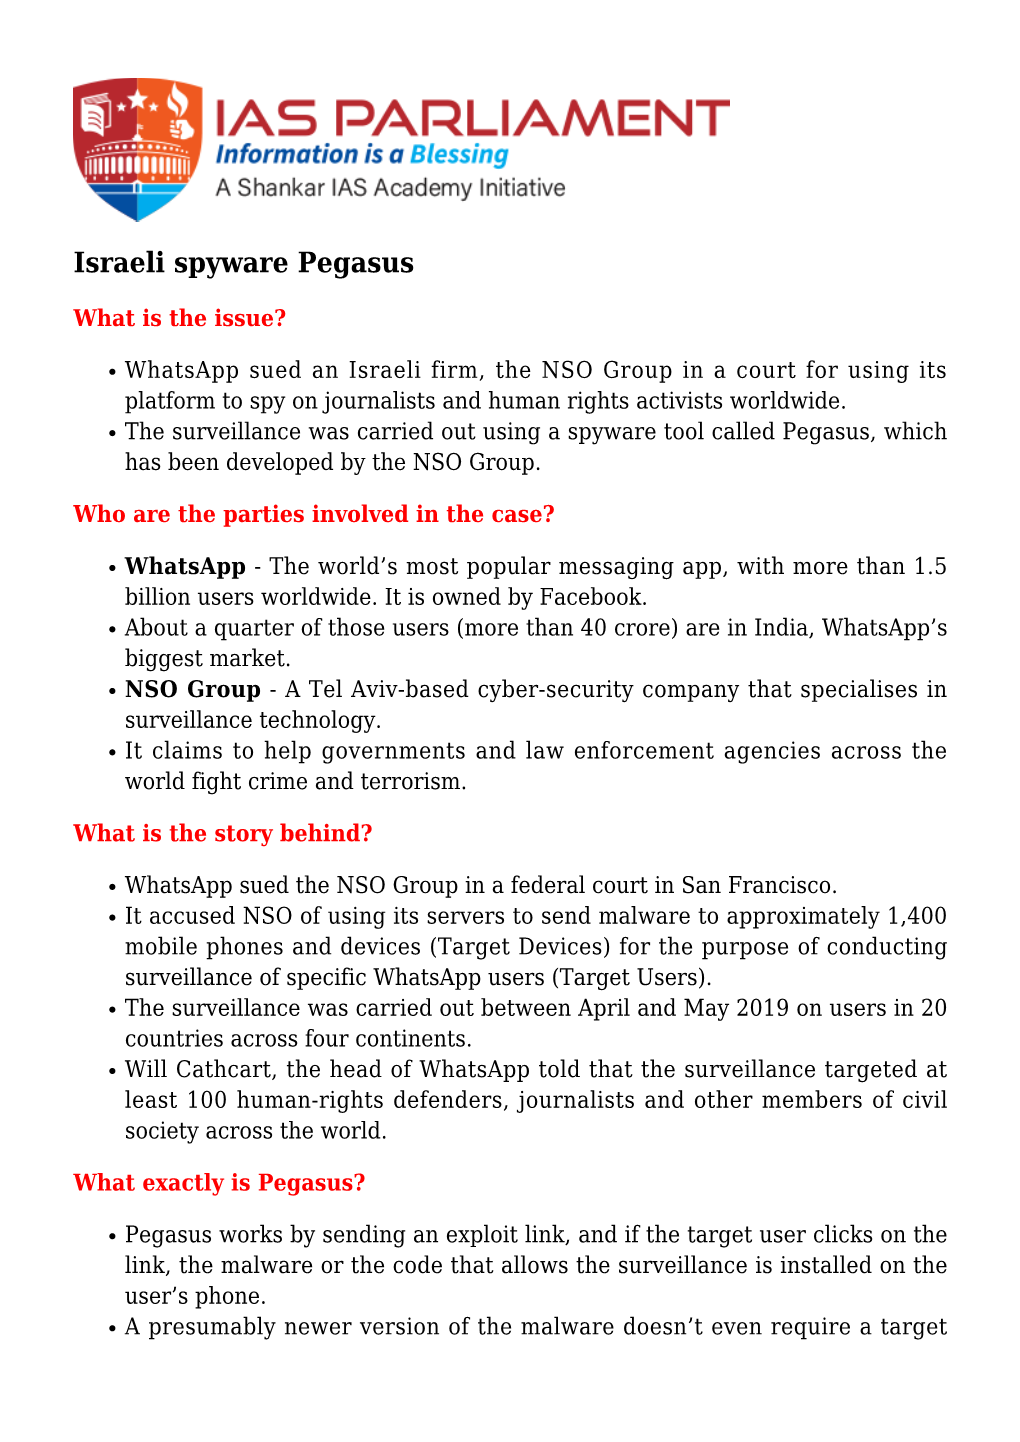 Israeli Spyware Pegasus